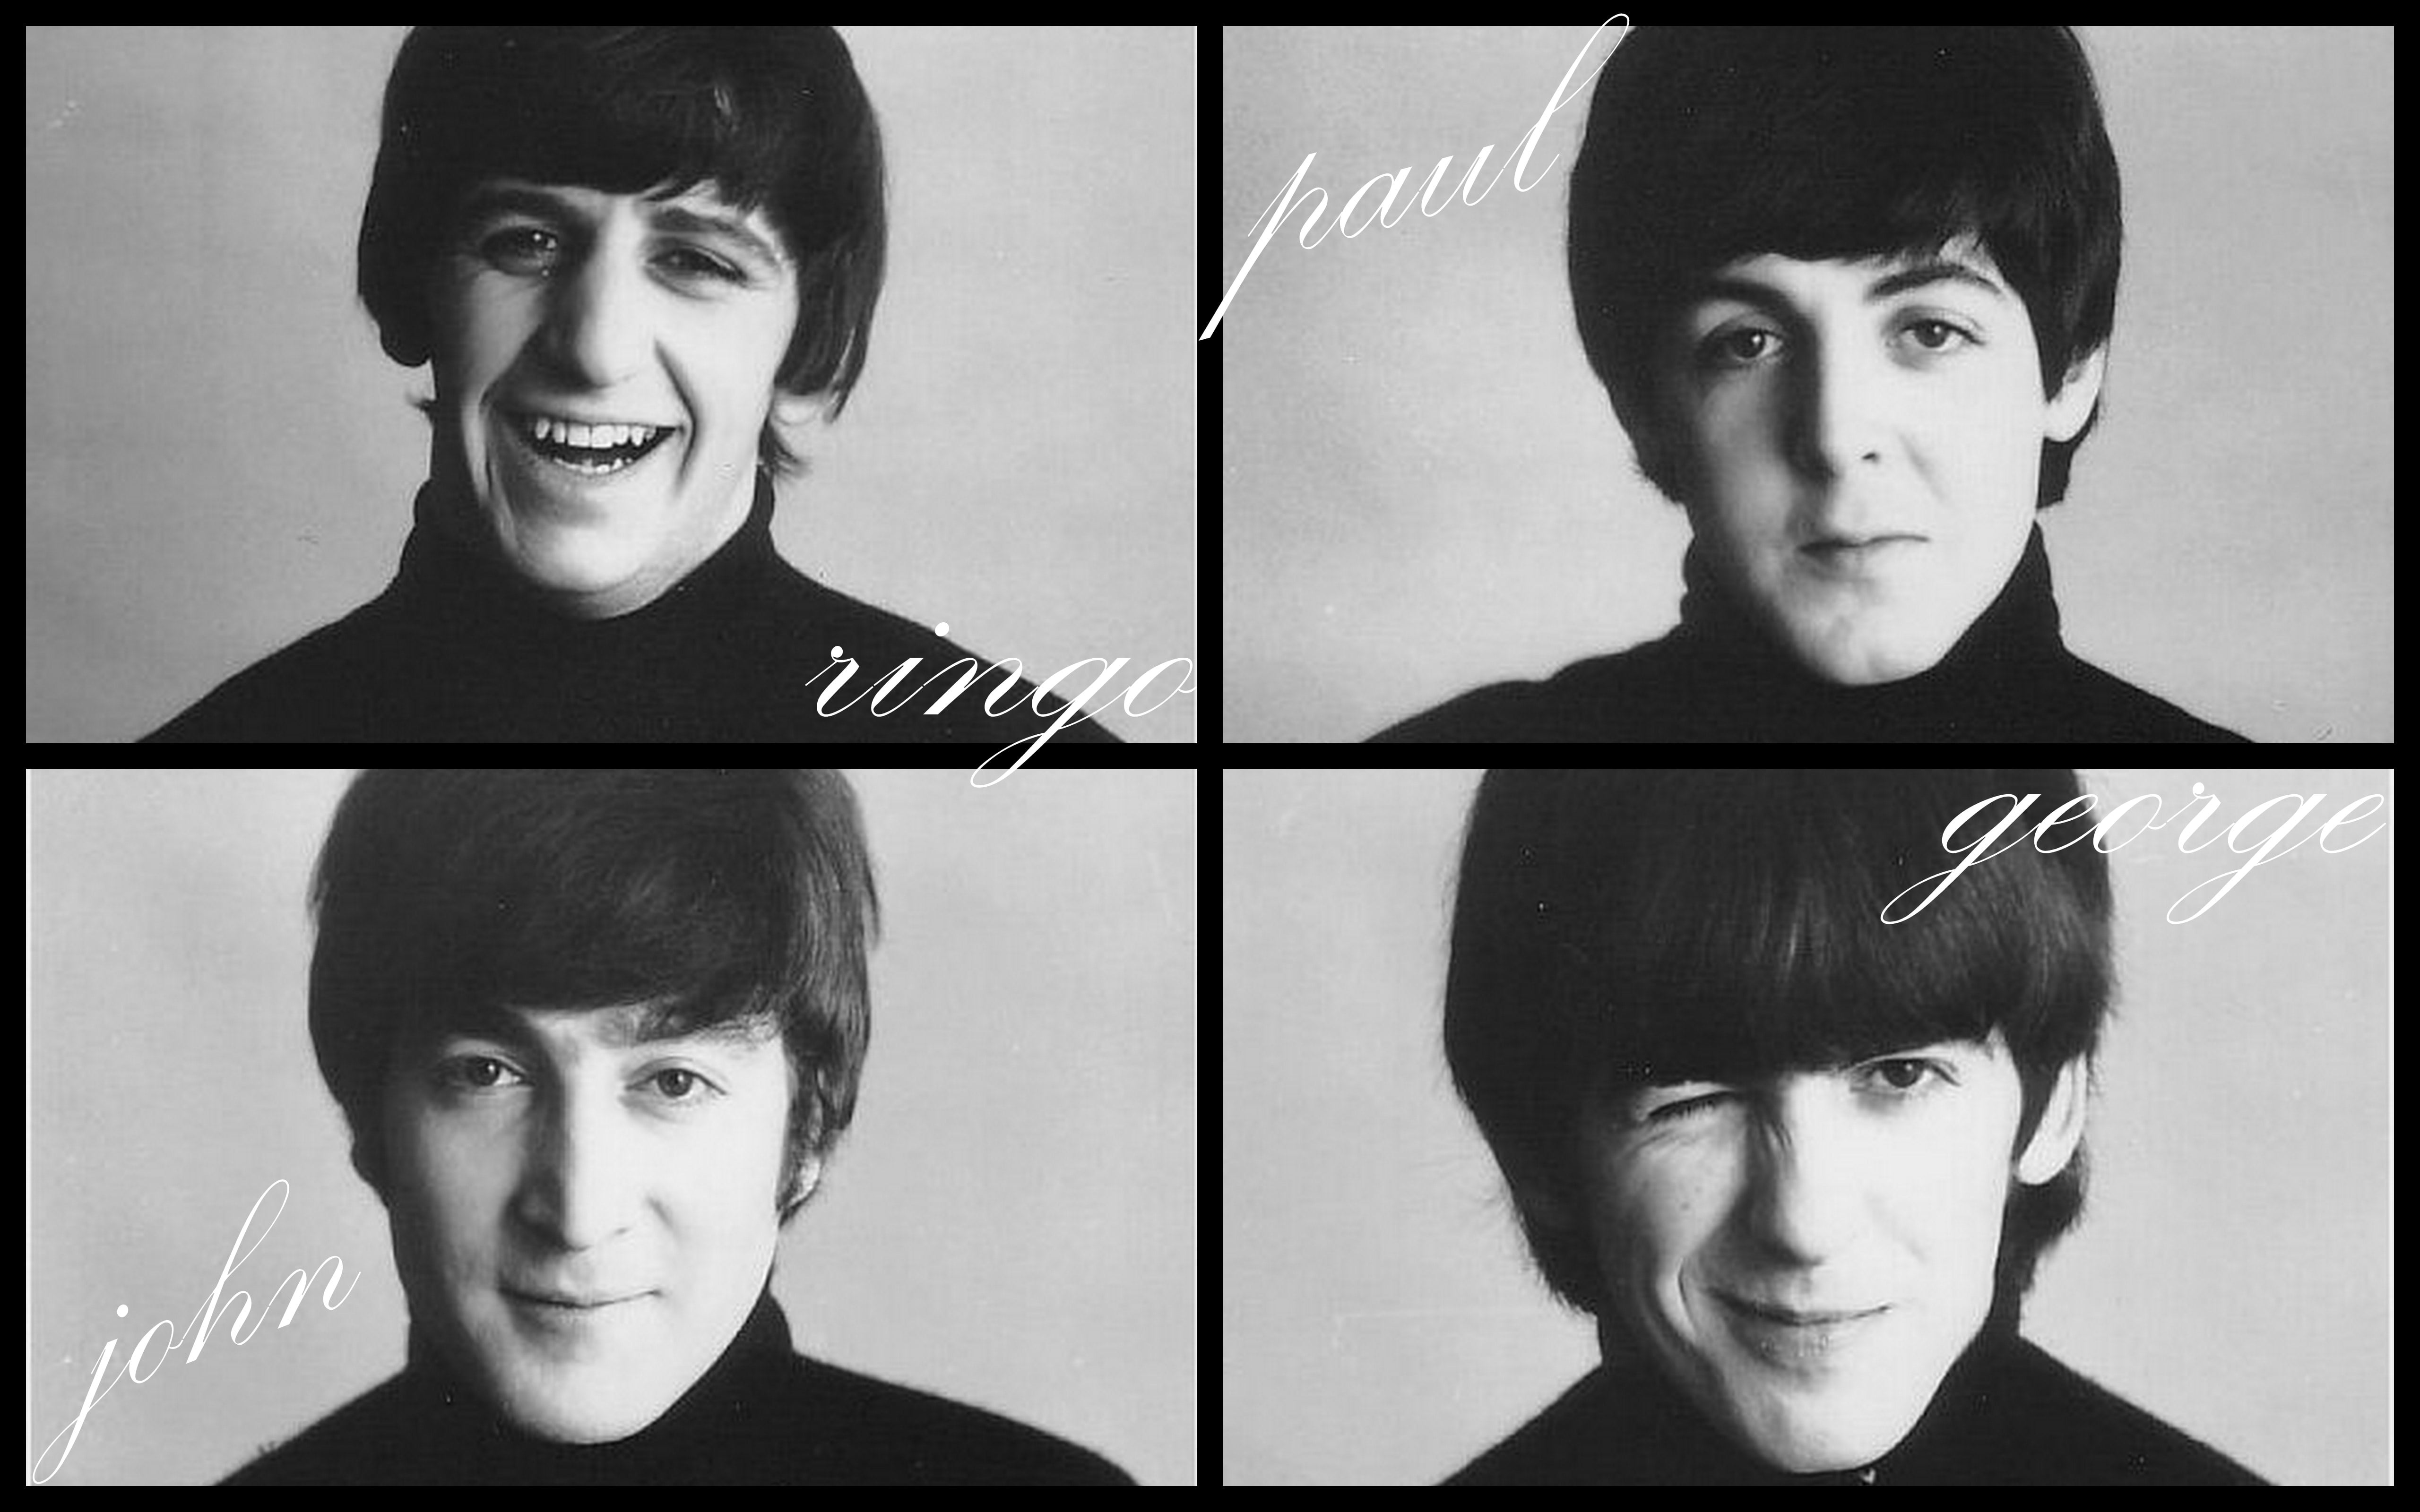 The Beatles, John Lennon, Paul McCartney, George Harrison, Ringo Starr